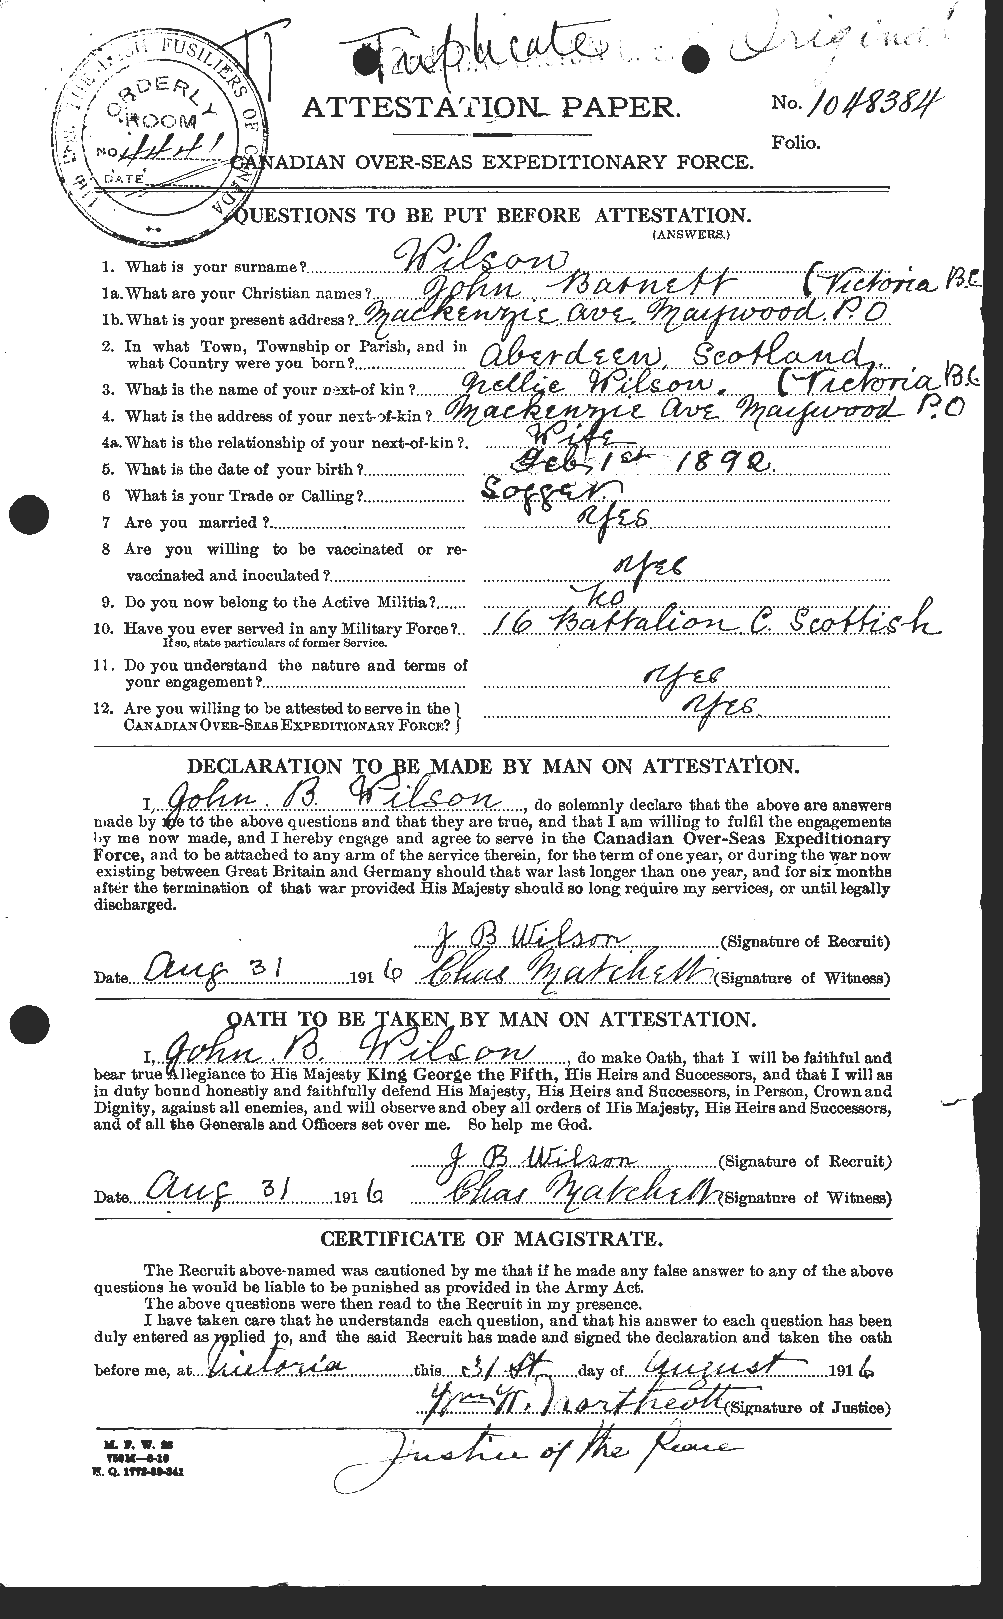 Dossiers du Personnel de la Première Guerre mondiale - CEC 681668a